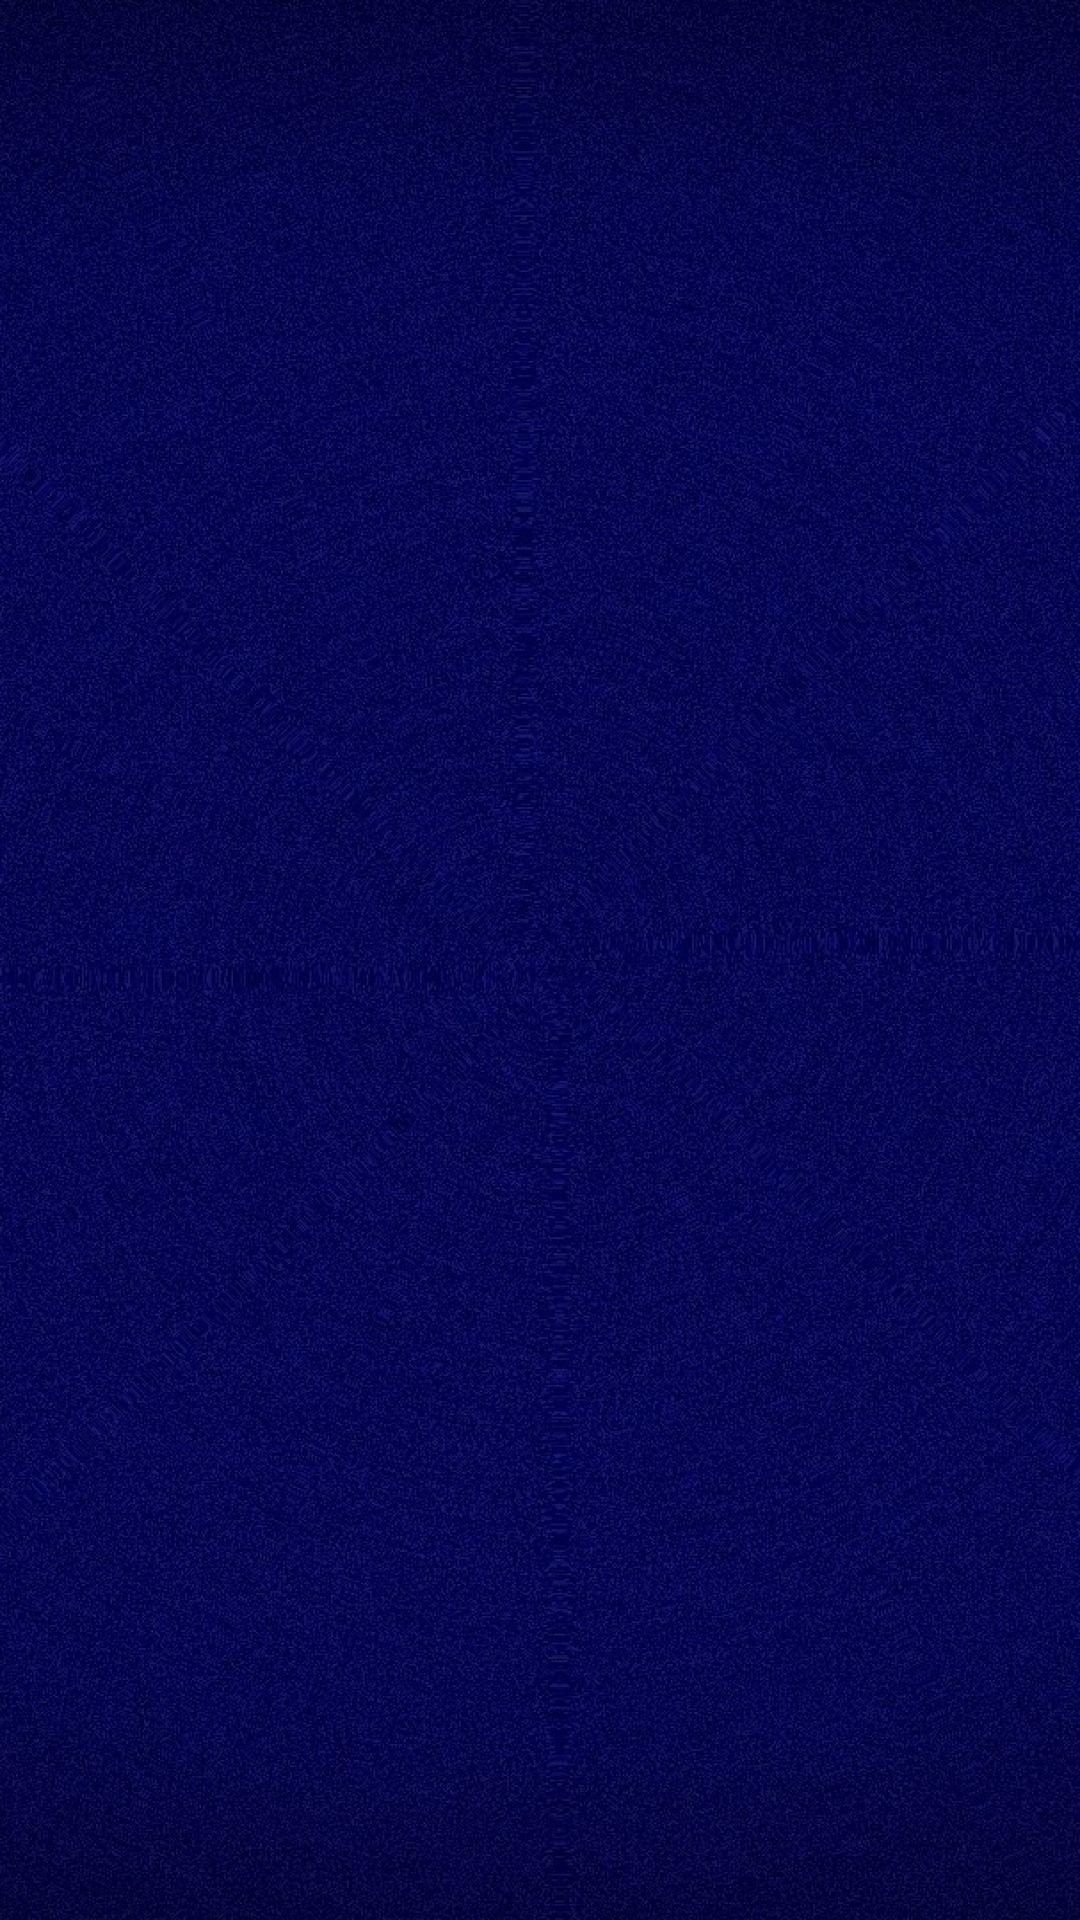 Dark Blue IPhone Wallpaper / Star ULTRA HD Textures